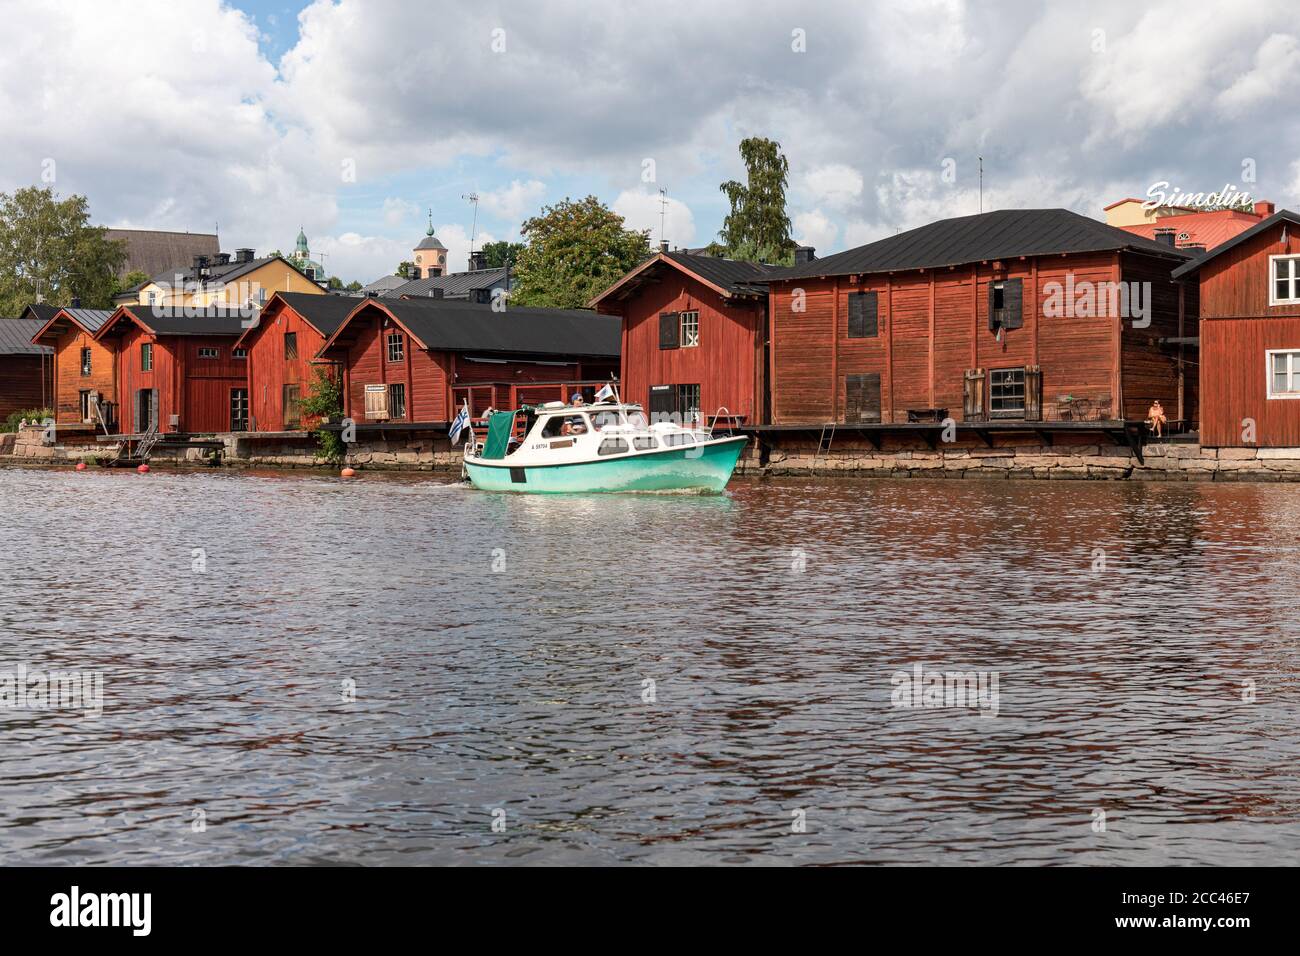 Bateau à moteur vert clair qui navigue à bord de bâtiments de stockage en bois de la vieille ville dans la rivière Porvoonjoki à Porvoo, en Finlande Banque D'Images